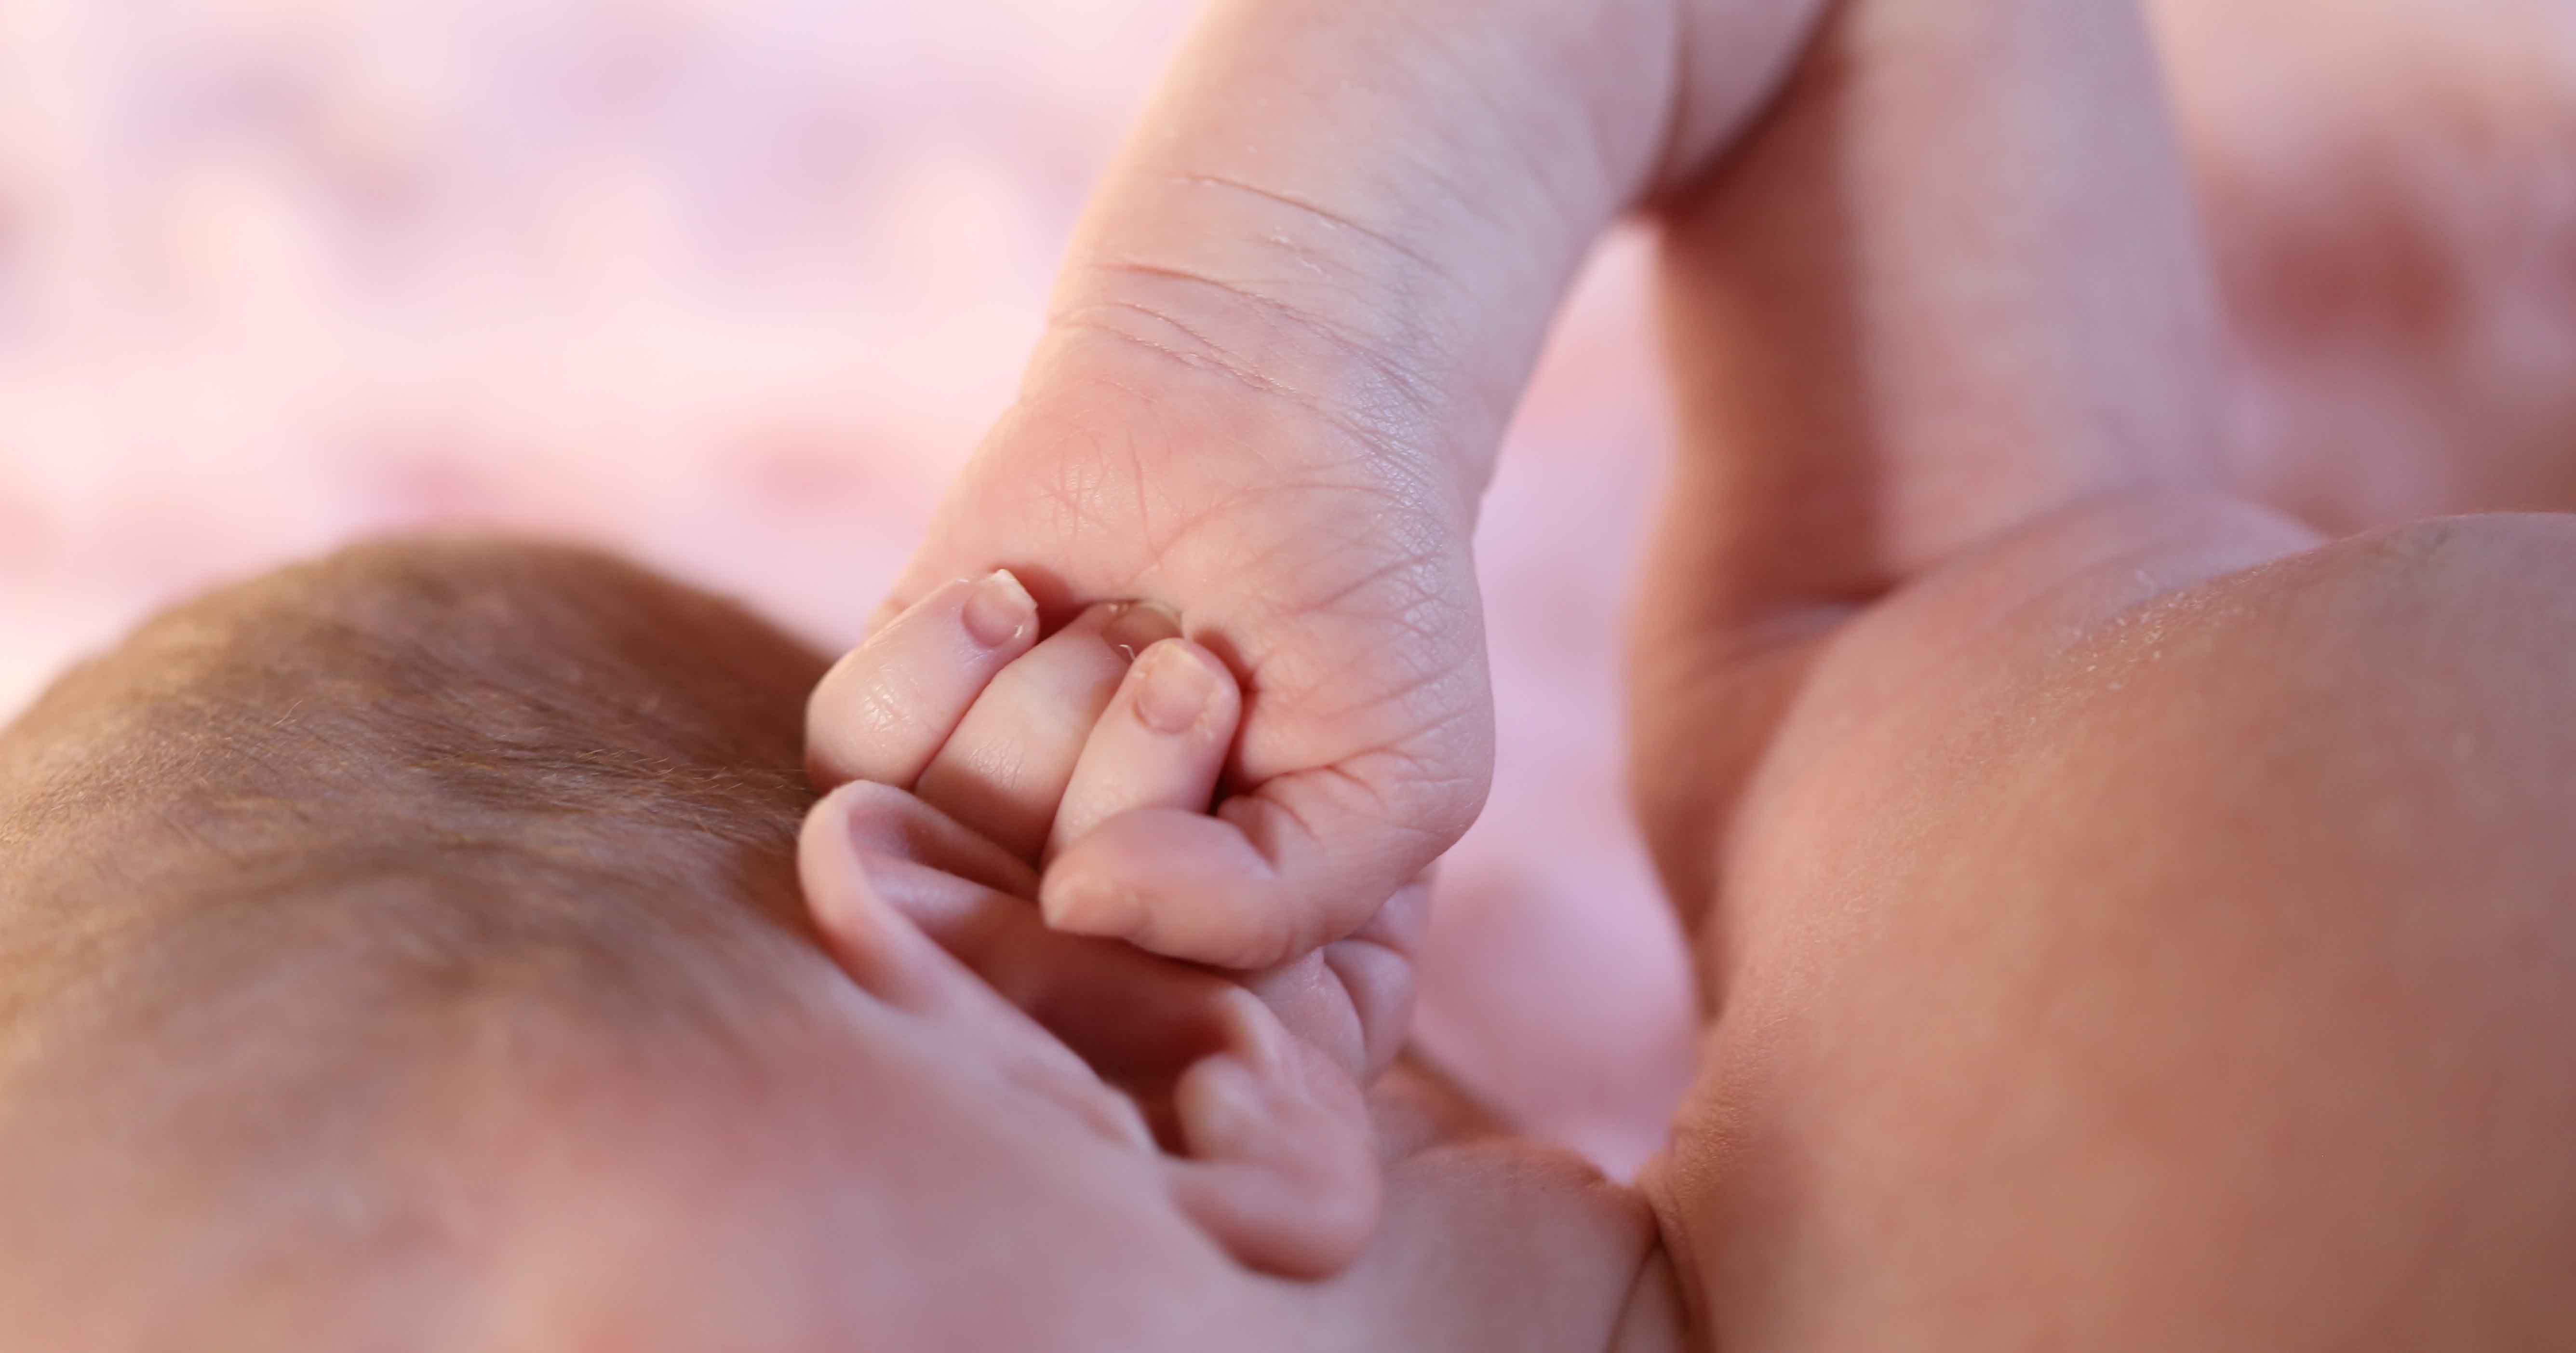 Bisa Deteksi Kelainan, Penting Tes Fungsi Pendengaran Bayi Baru Lahir